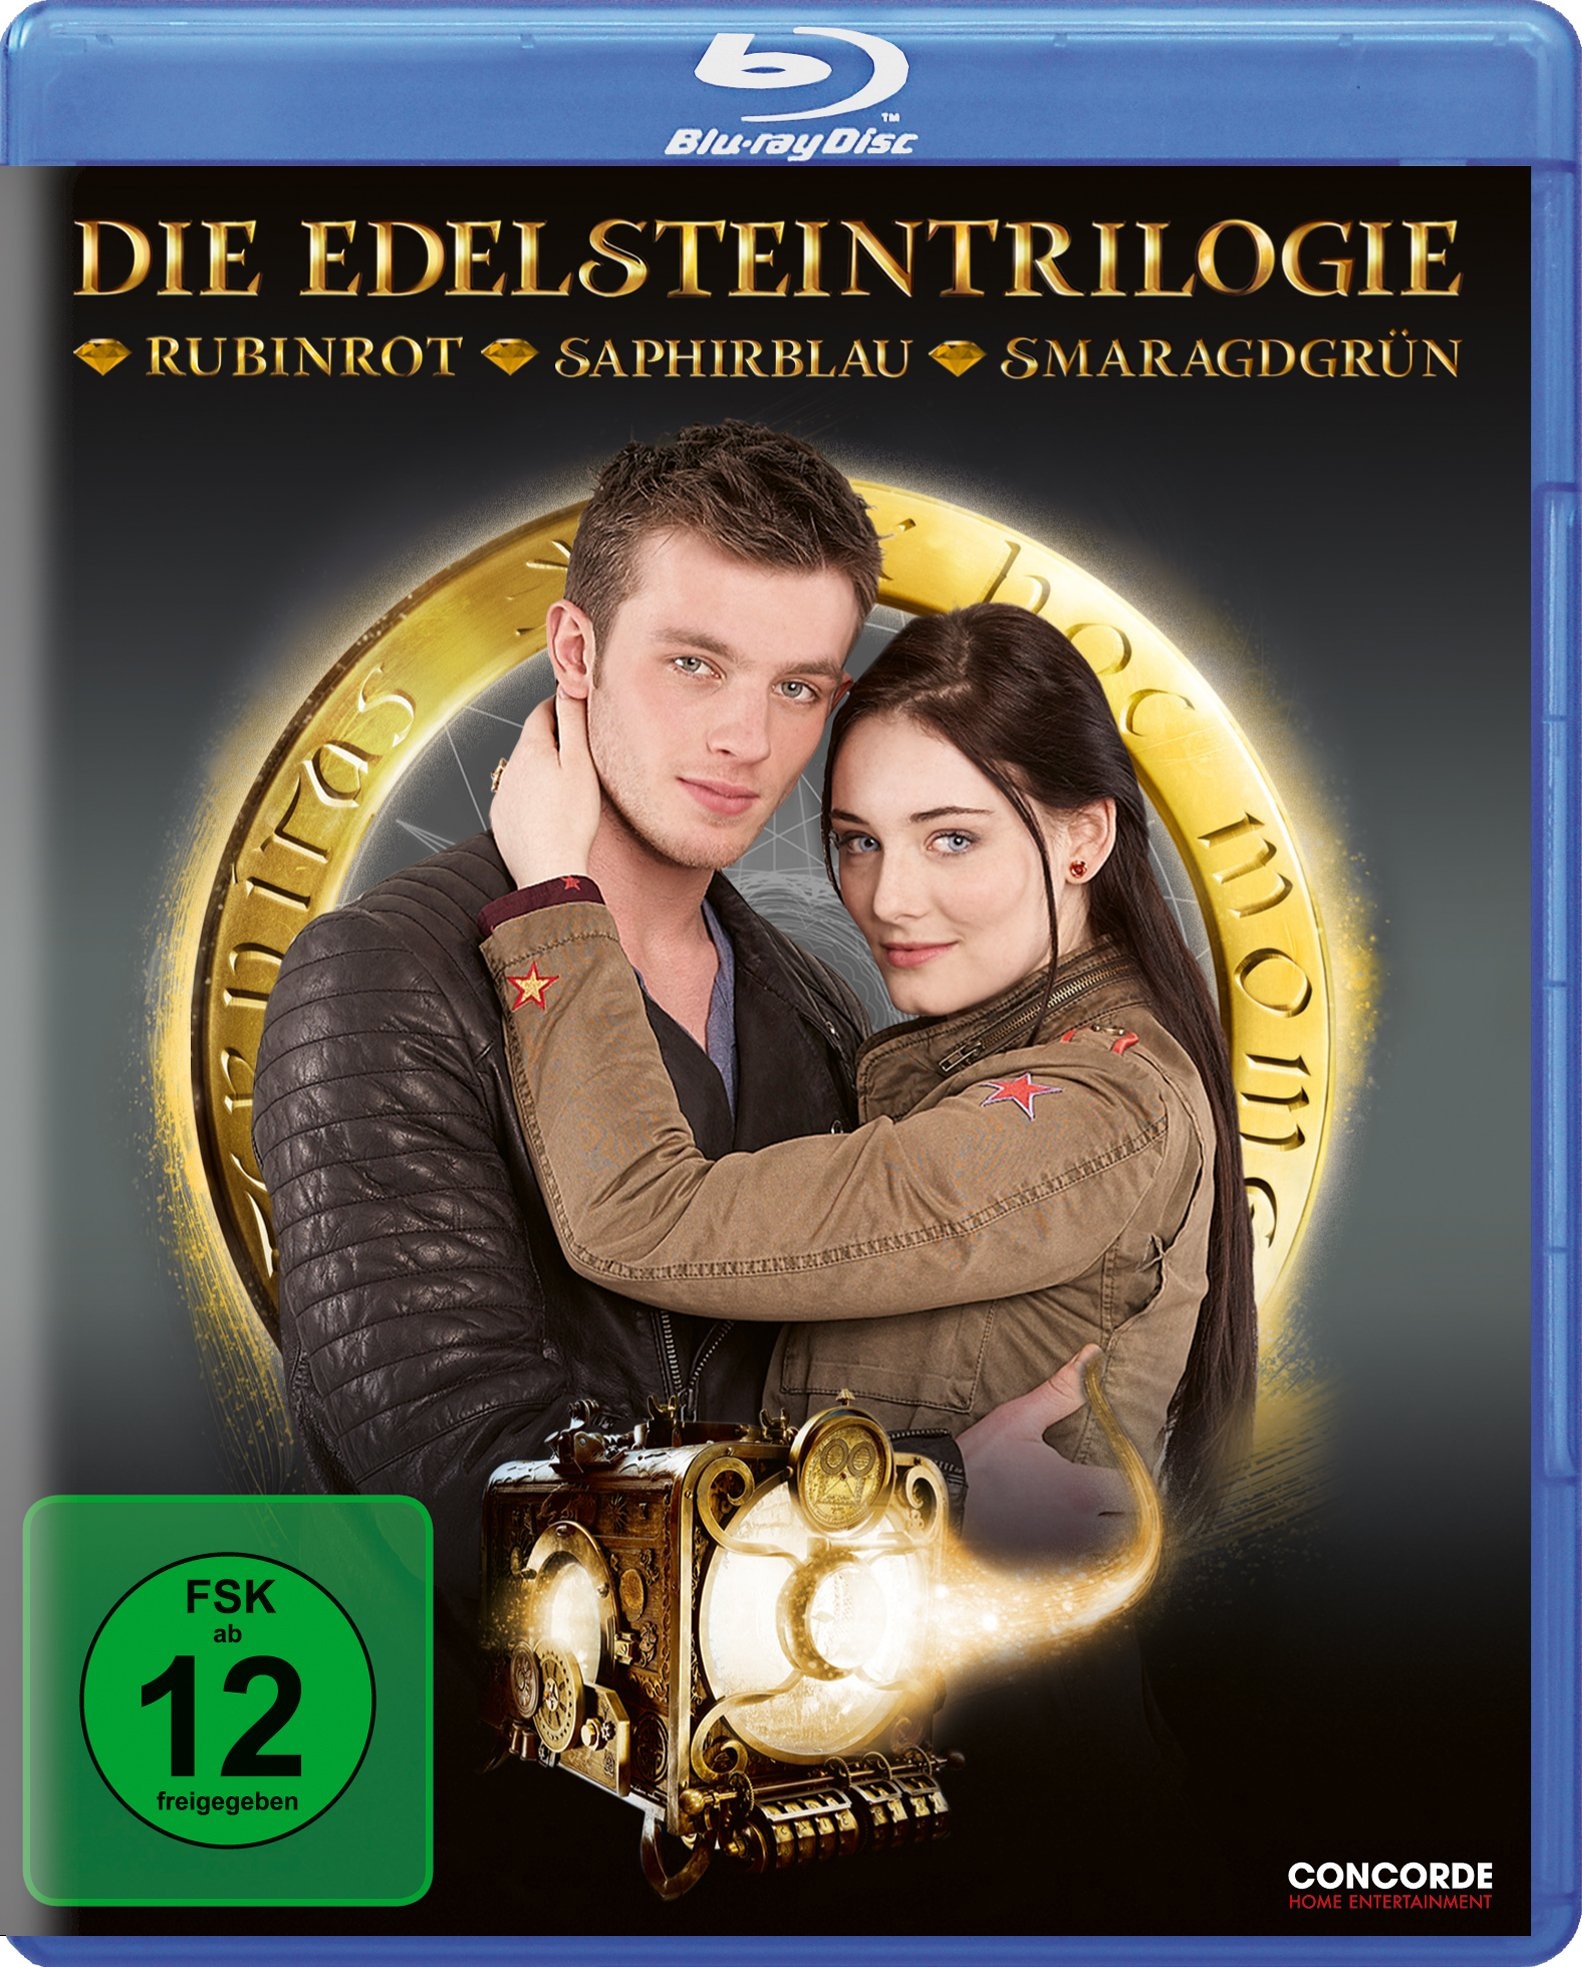 Edelstein-Trilogie [Blu-ray] (Neu differenzbesteuert)